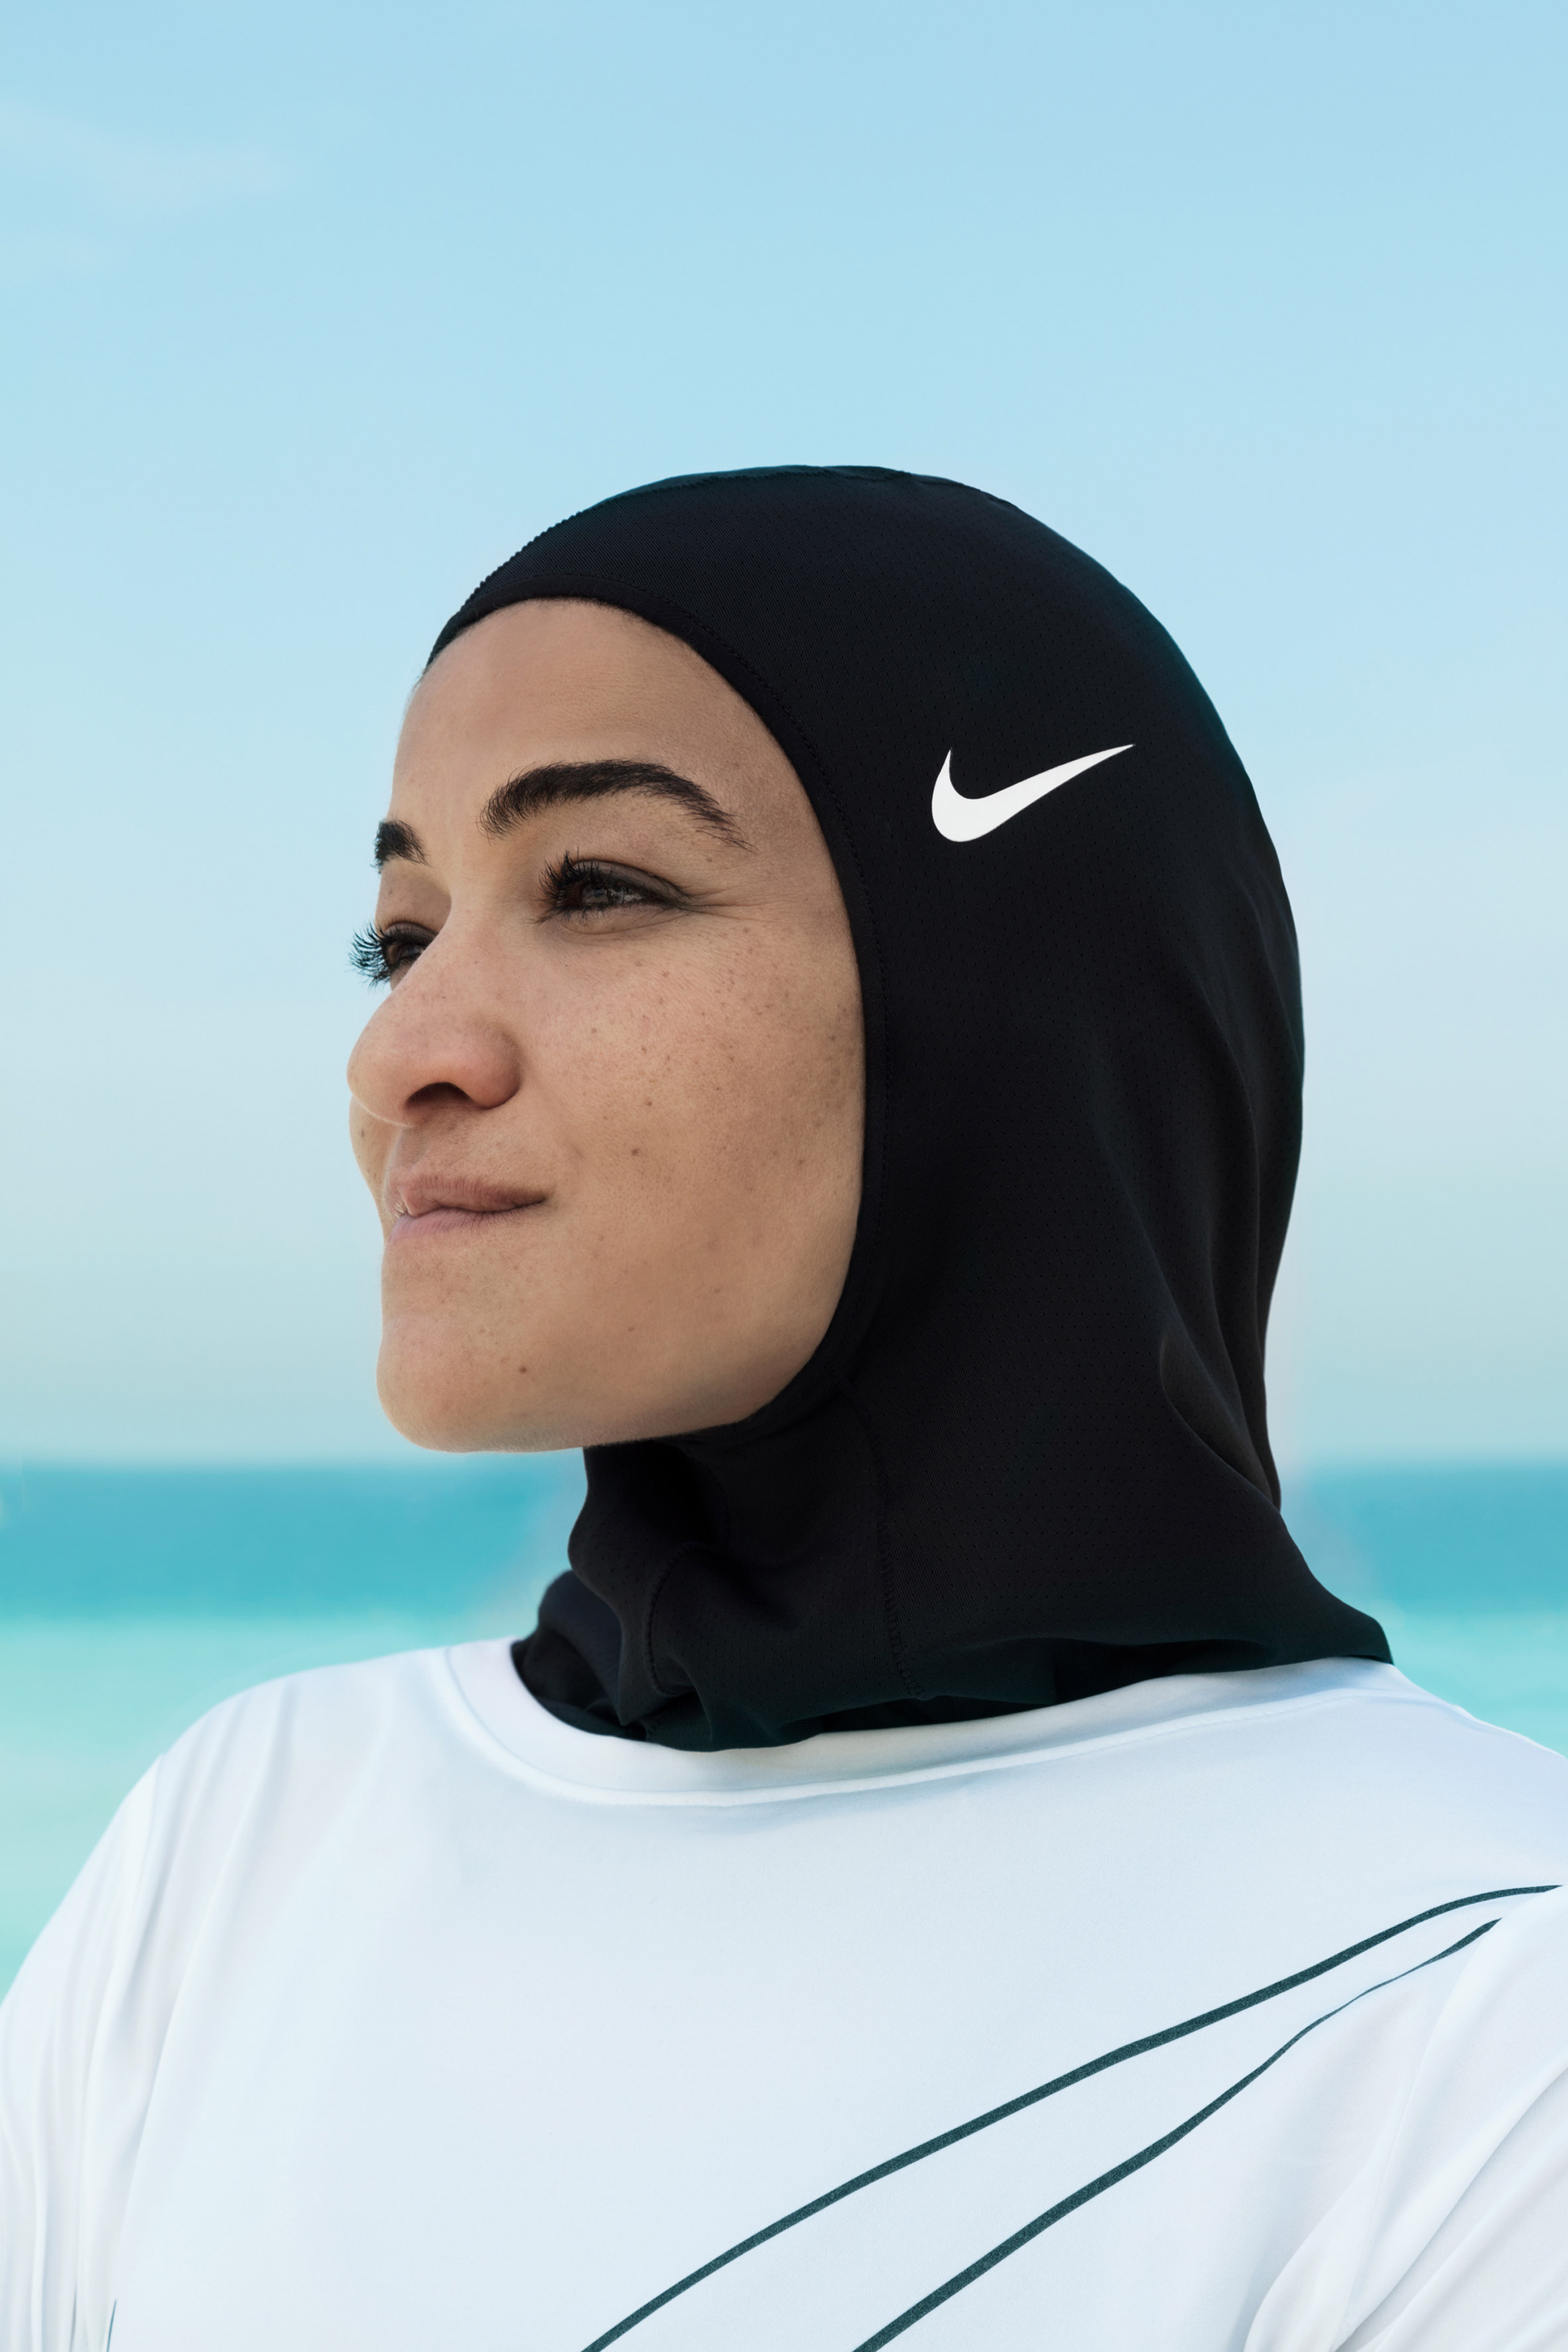 Nike unveils Pro Hijab female athletes